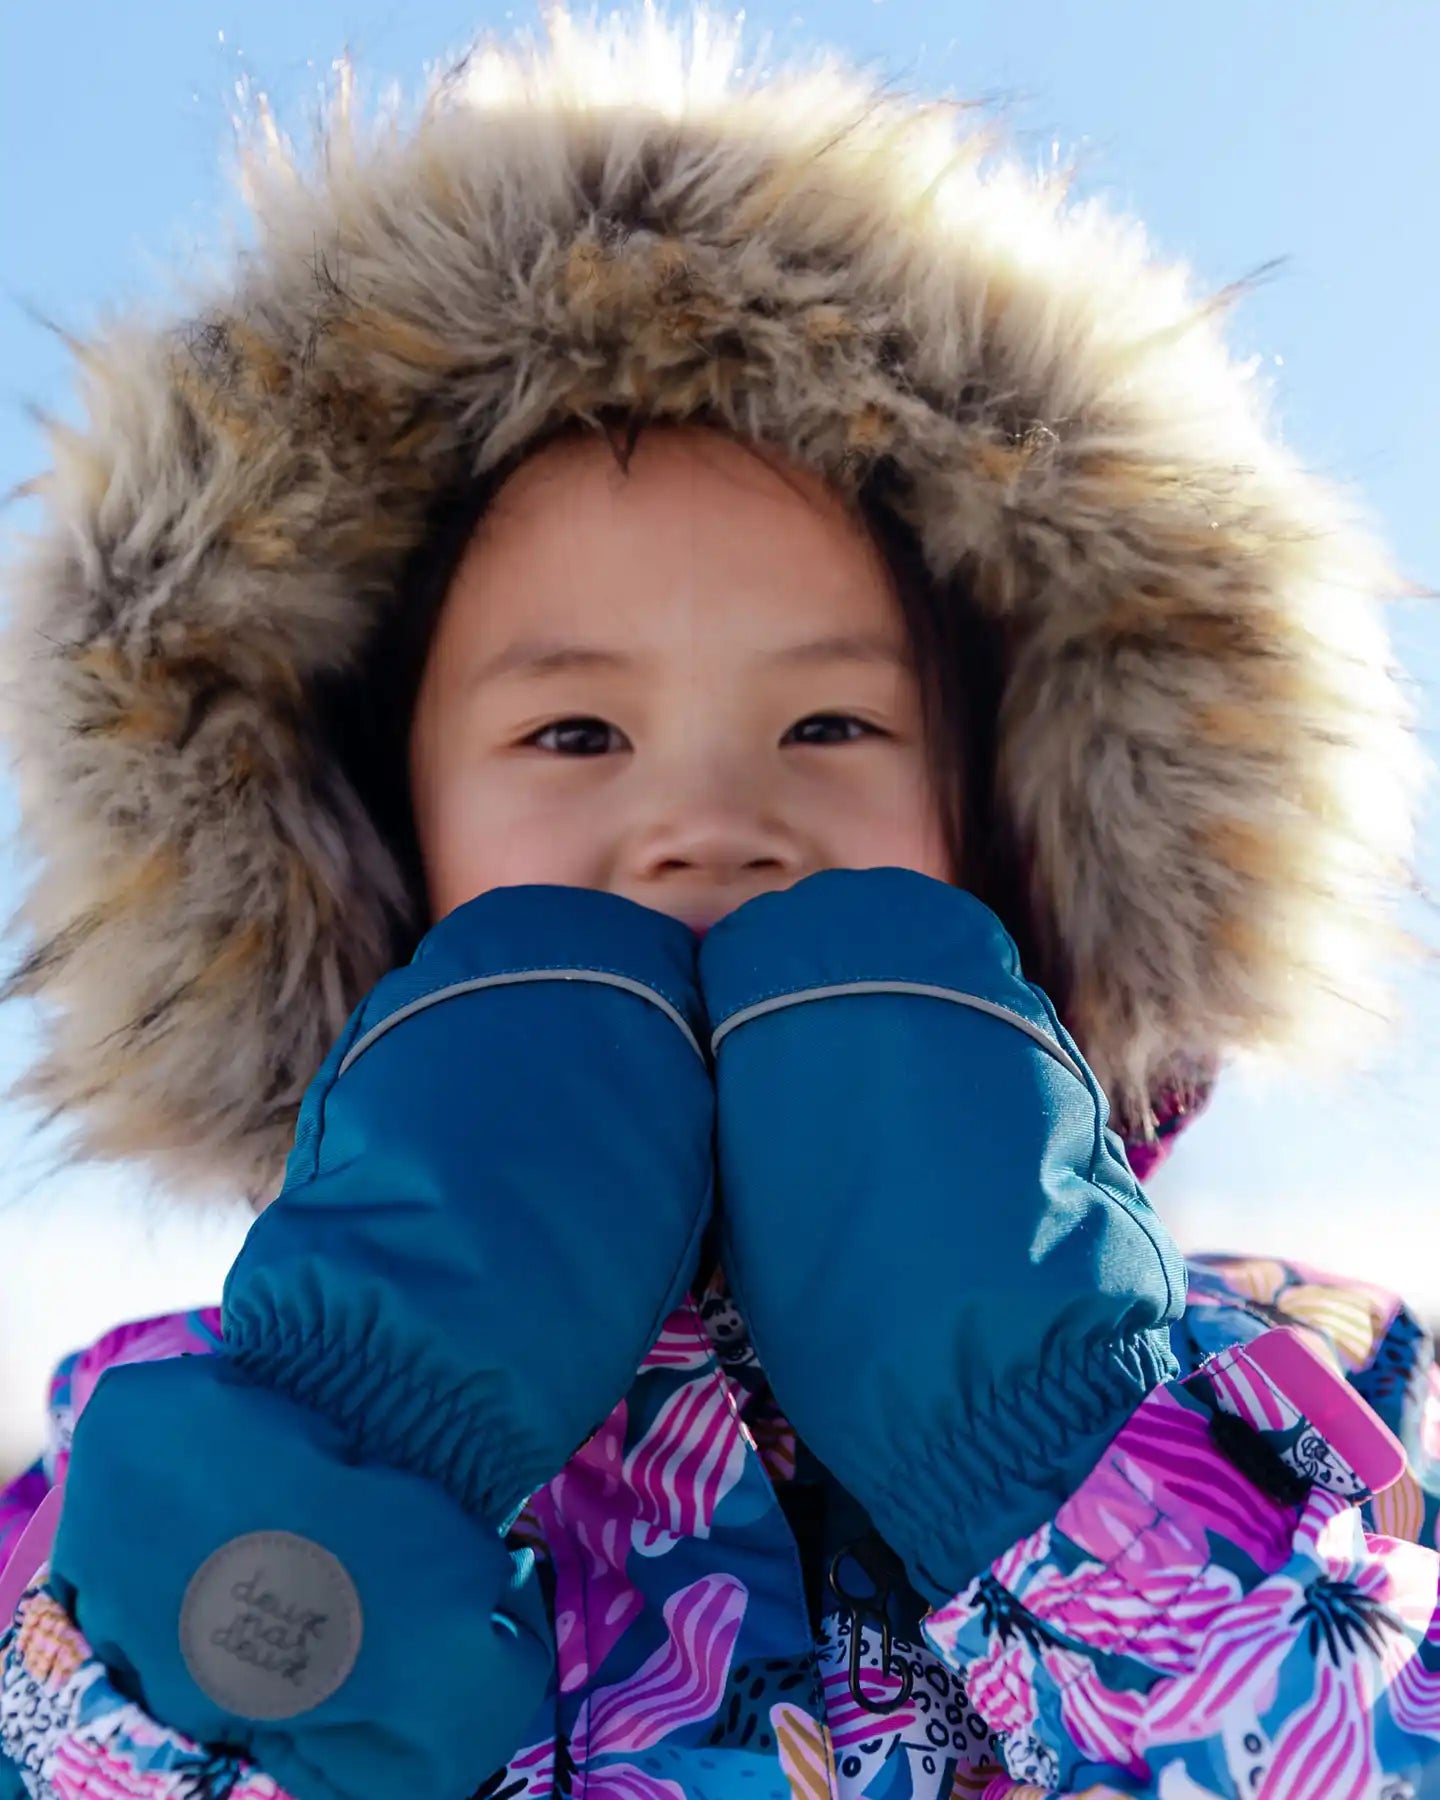 Doublé polaire enfant en bas âge mitaines enfants hiver chaud gants enfant  ski gants imperméable neige bébé mitaine pour garçons filles 